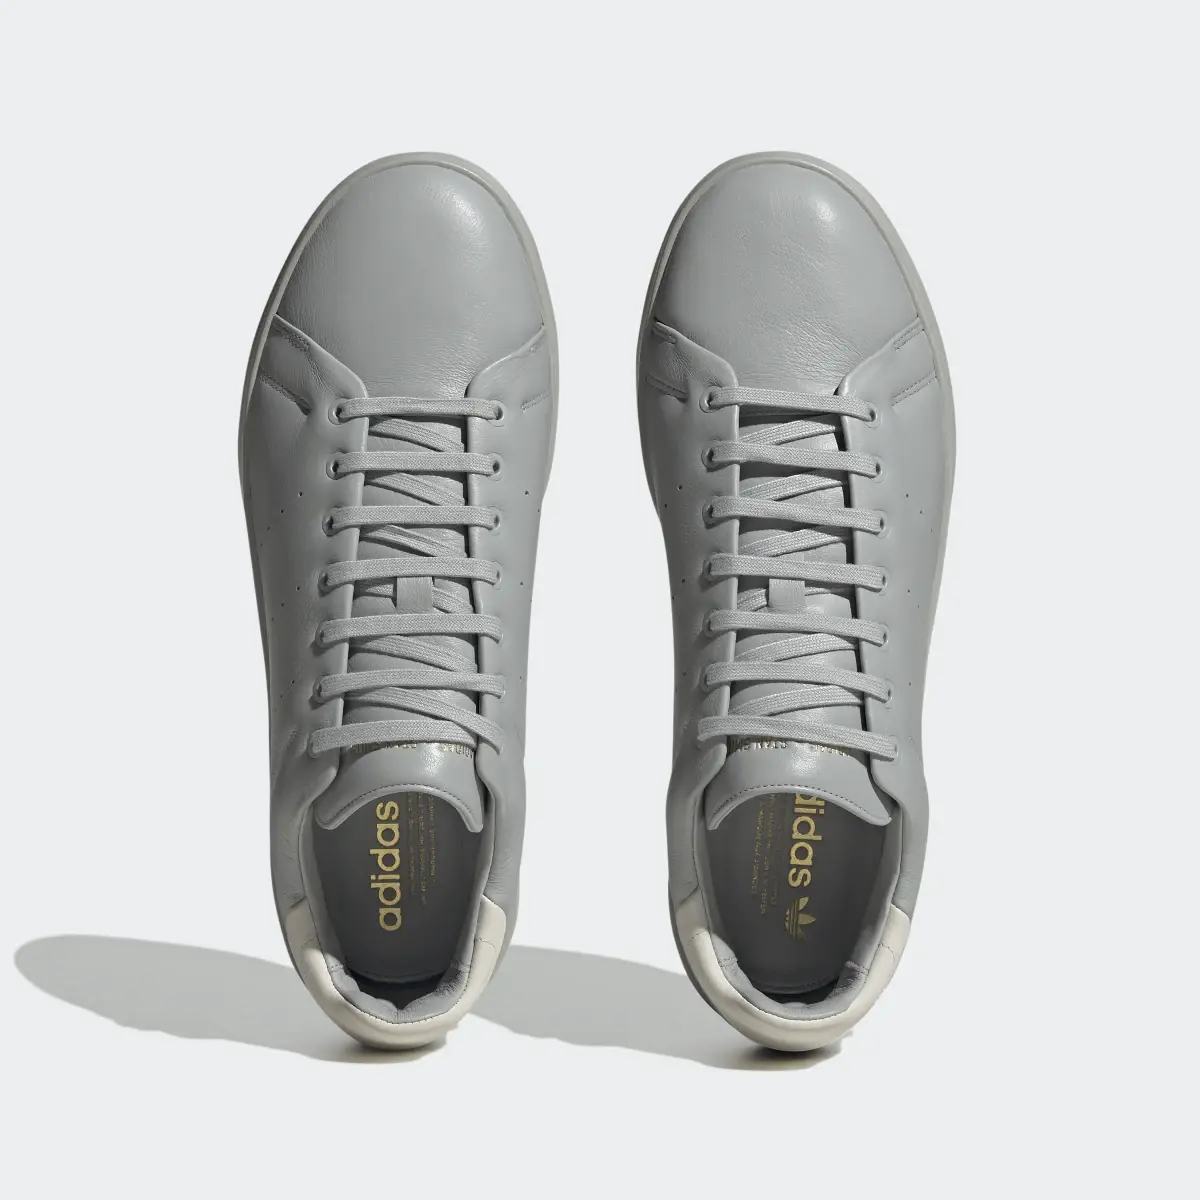 Adidas Stan Smith Recon Schuh. 3